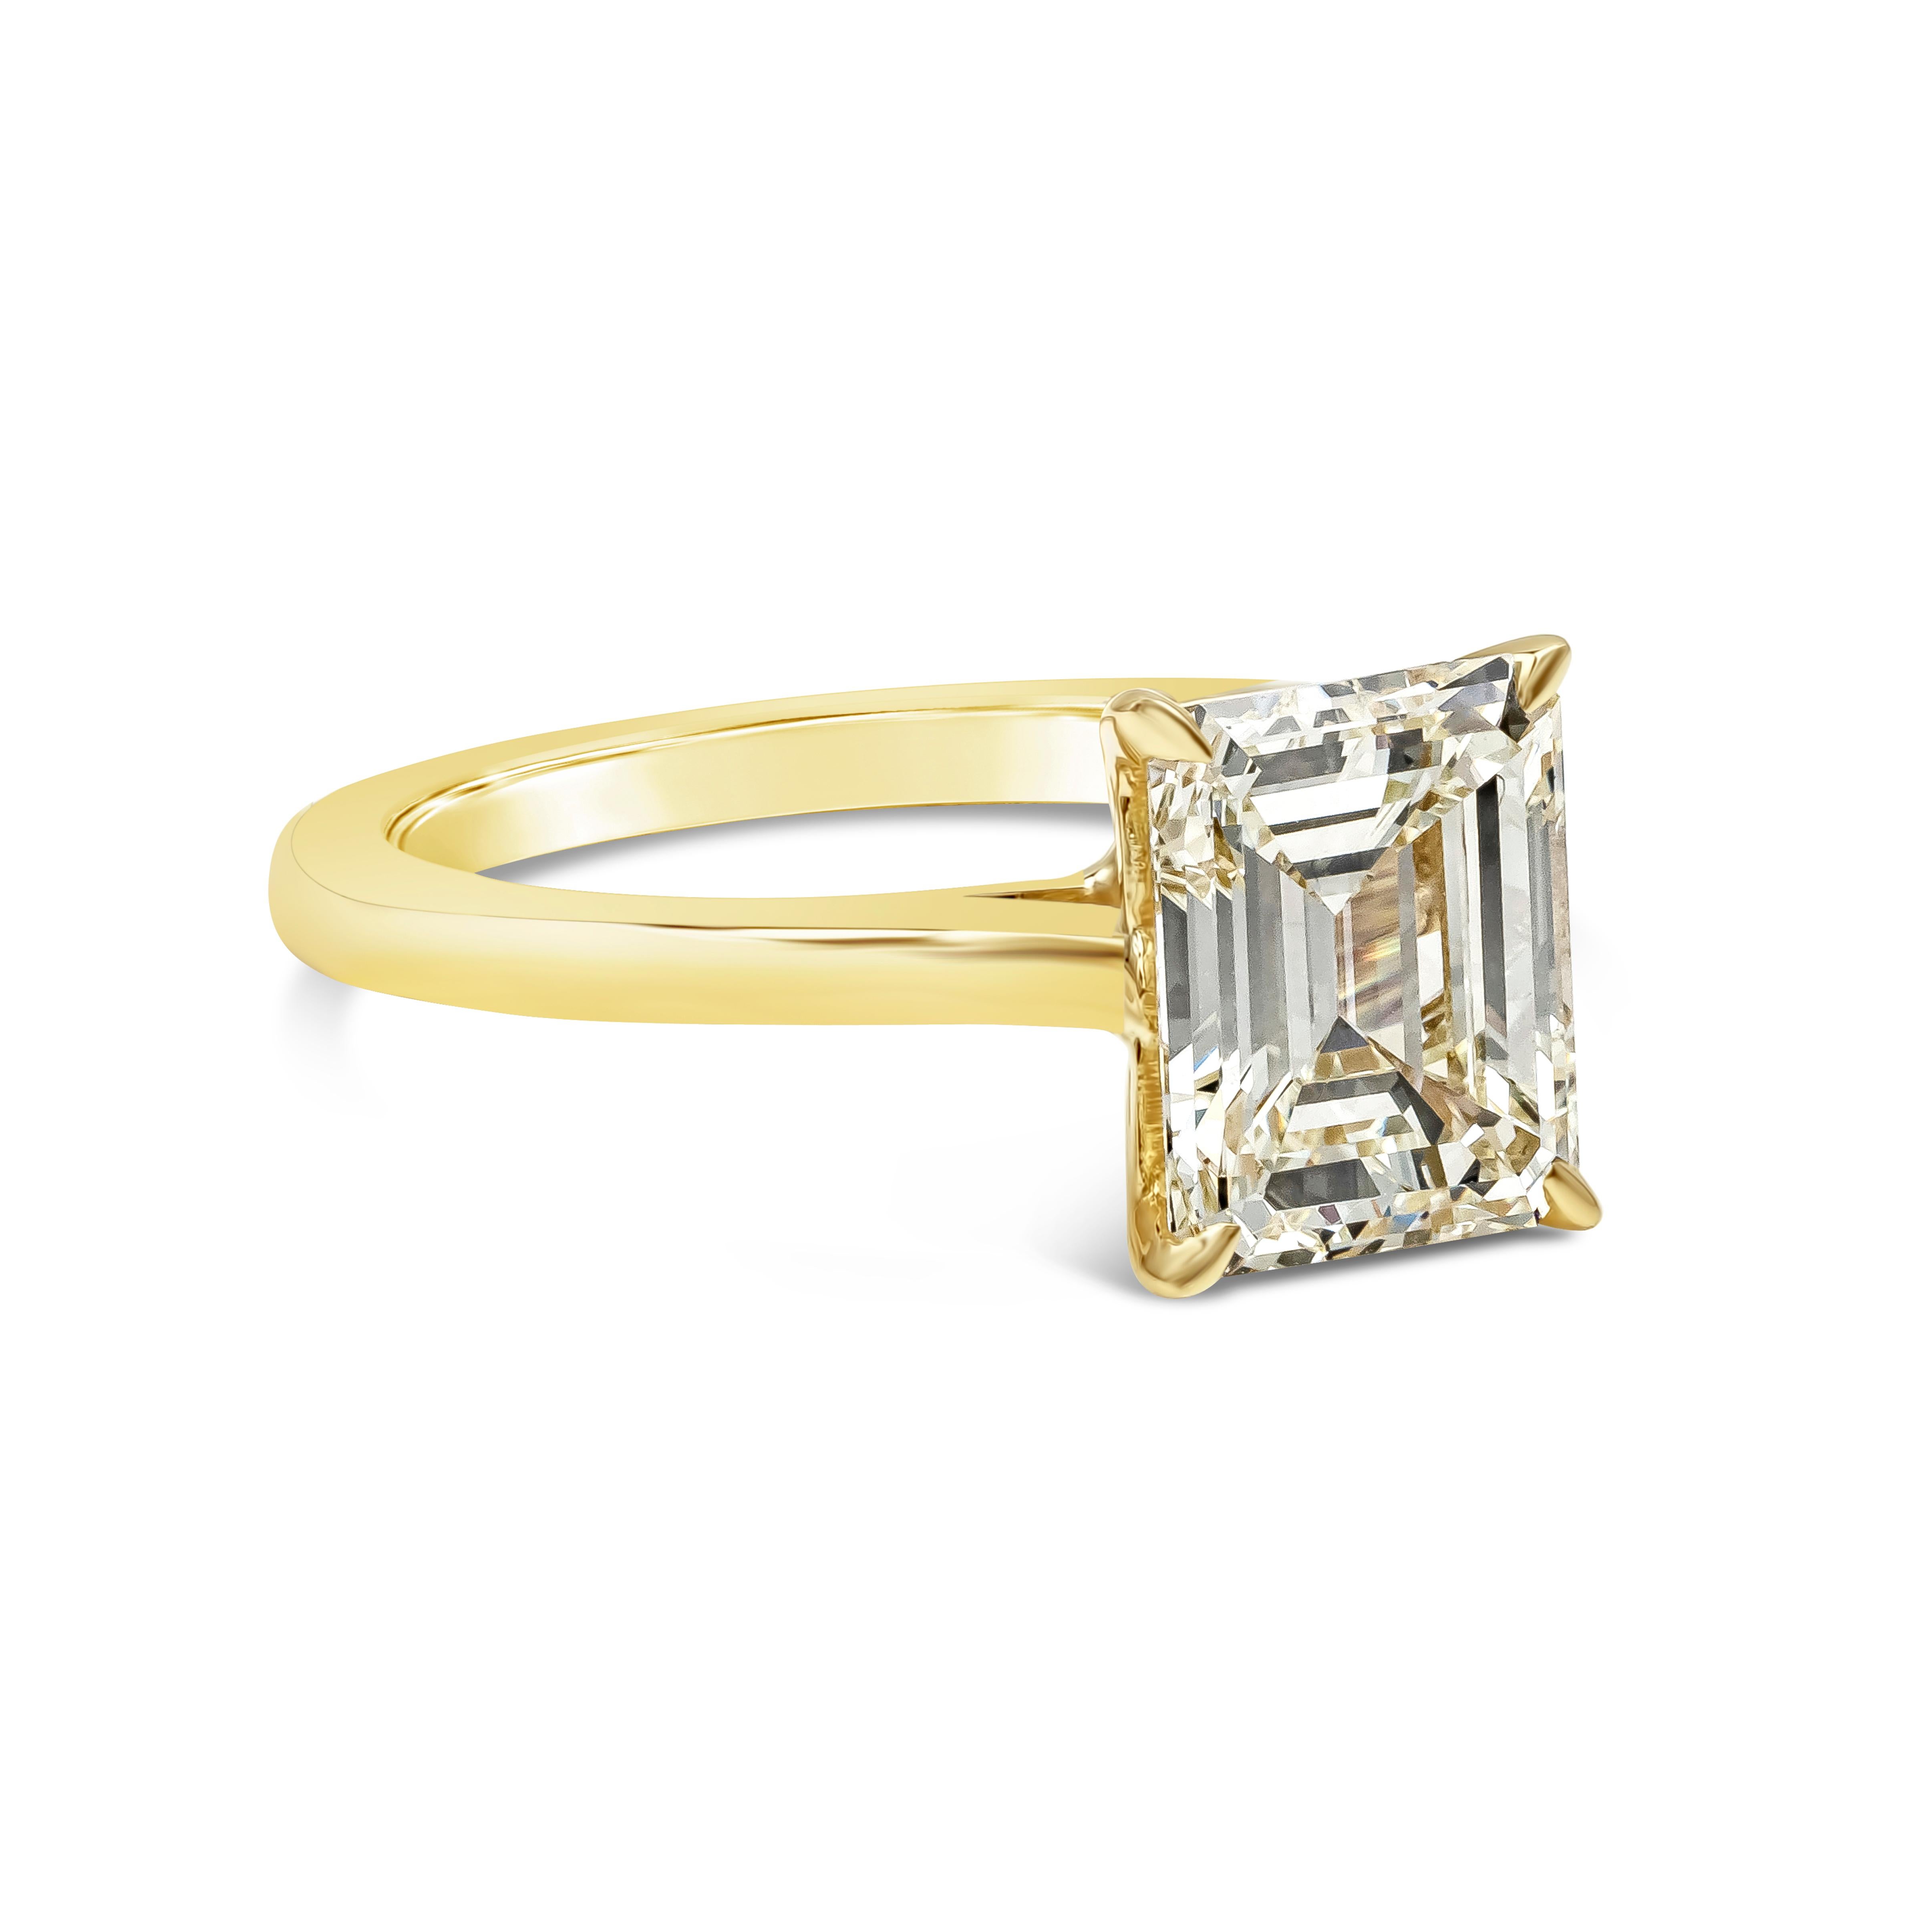 Ein klassischer Solitär-Verlobungsring mit einem 2,30 Karat schweren Diamanten im Smaragdschliff, der von GIA mit der Farbe M und der Reinheit VVS2 zertifiziert wurde. Der Diamant ist in einer polierten Fassung aus 18 Karat Gelbgold gefasst. Größe 6